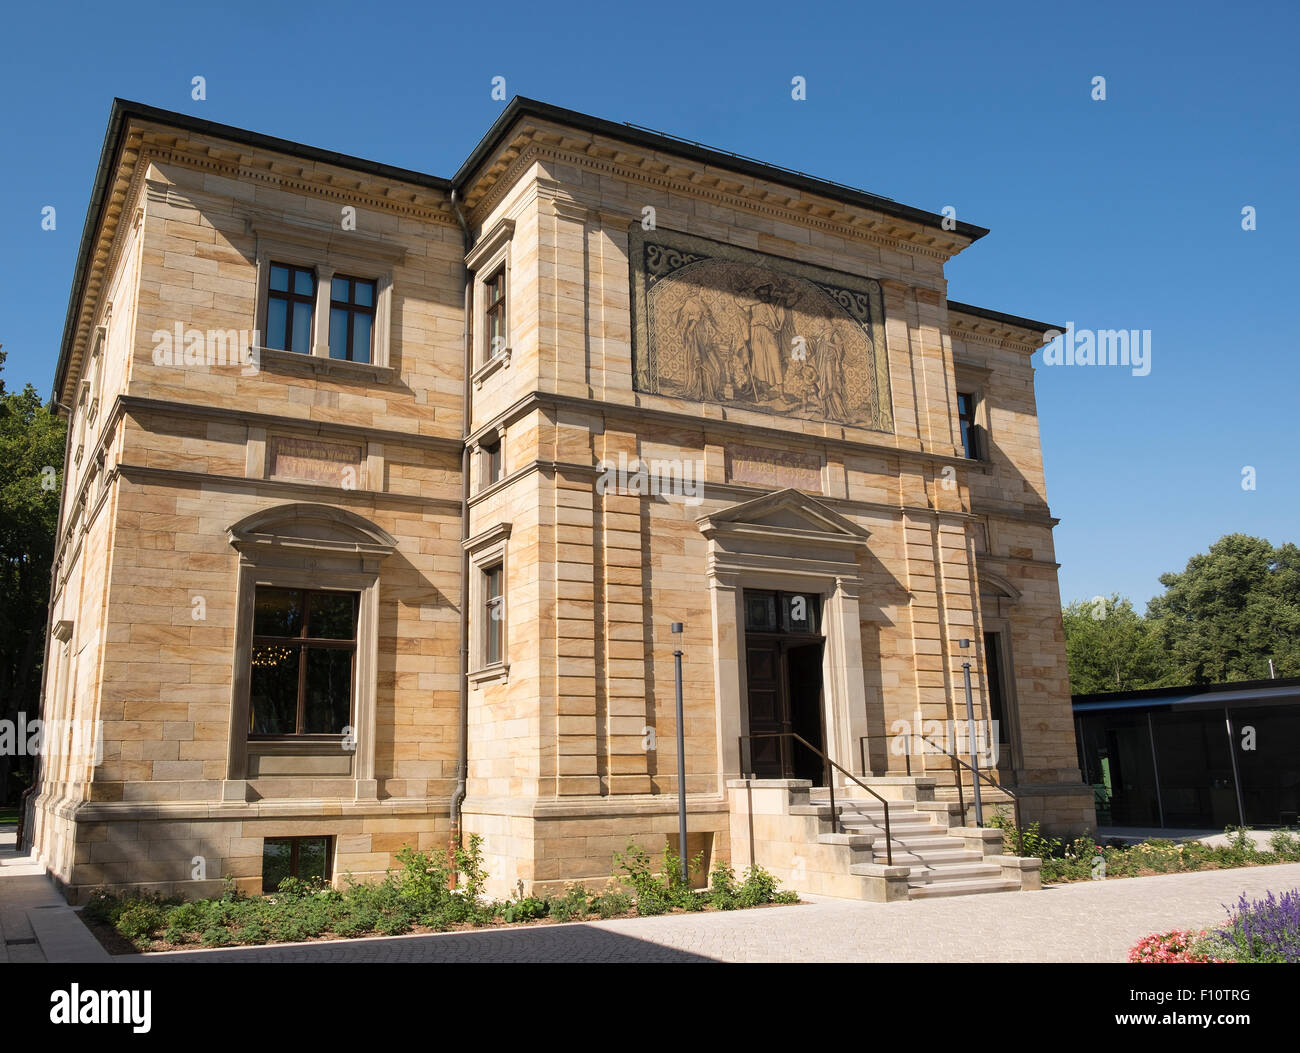 Villa Wahnfried - Heimat des Komponisten Richard Wagner in der Stadt Bayreuth, Deutschland.  Heute ein Museum. Stockfoto